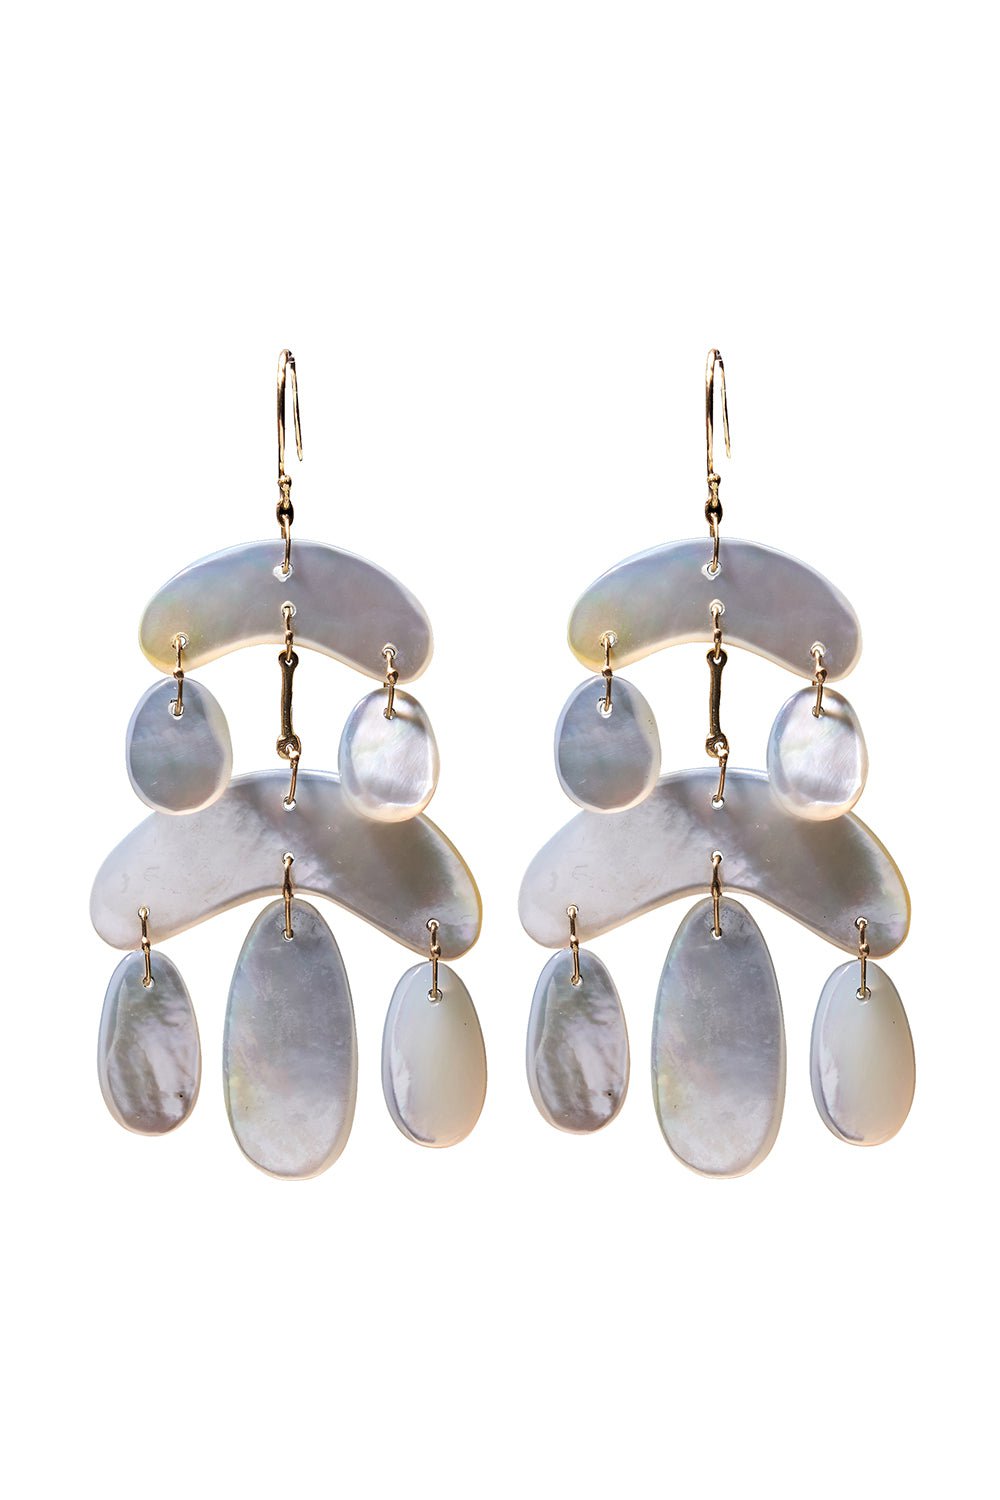 Mini Cut Stone Pearl  Chandelier Earrings JEWELRYFINE JEWELEARRING TEN THOUSAND THINGS   